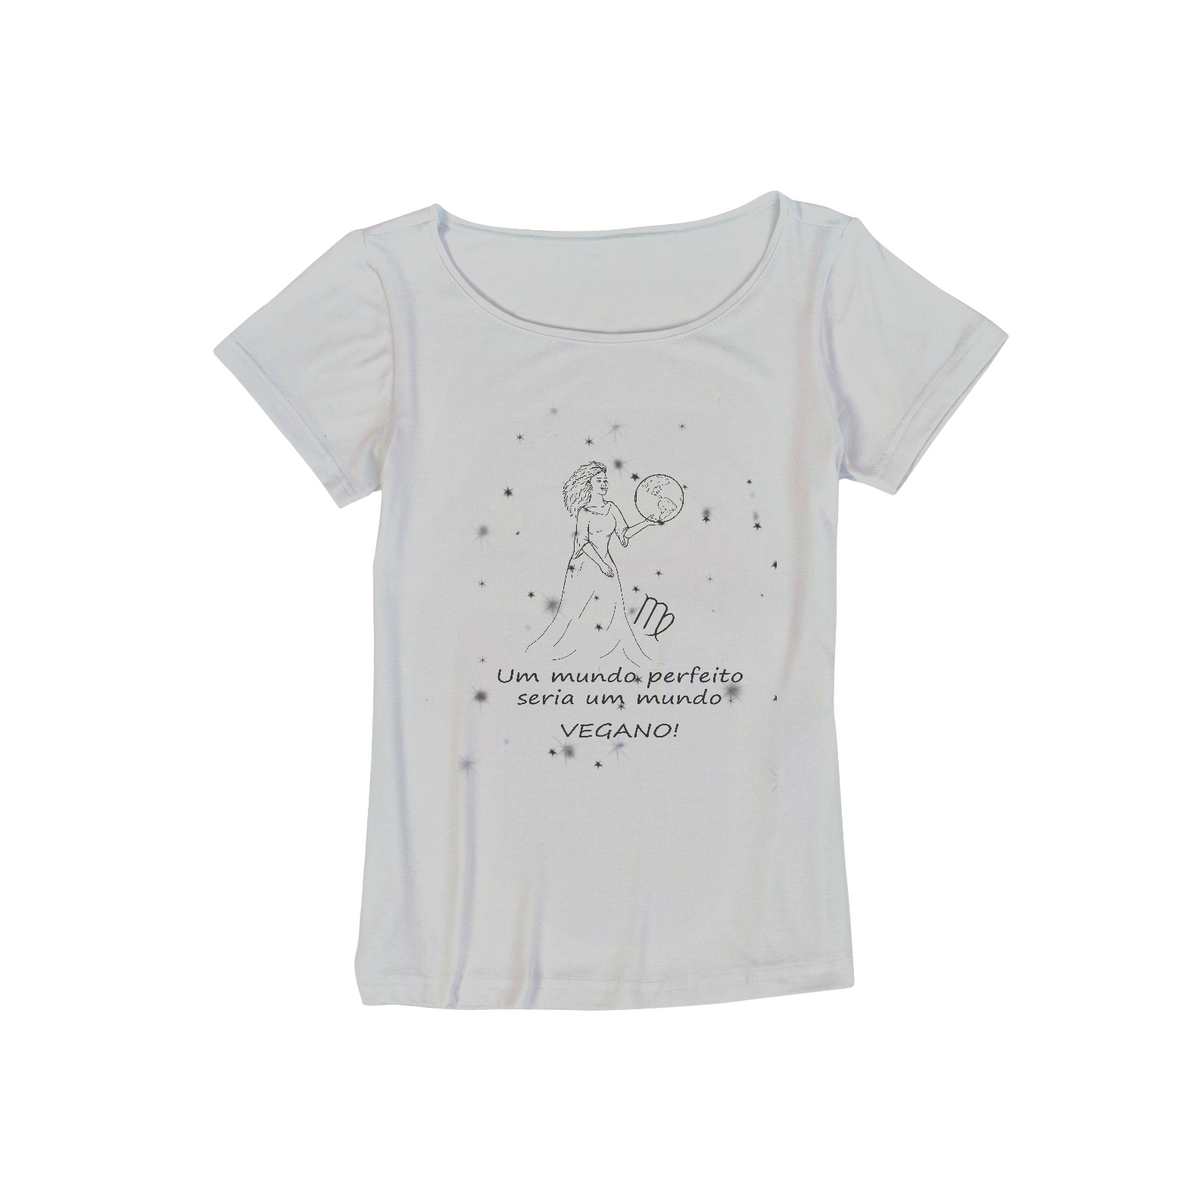 Nome do produto: Camiseta Viscolycra | Virgem | Um mundo perfeito seria um mundo VEGANO! | P&B